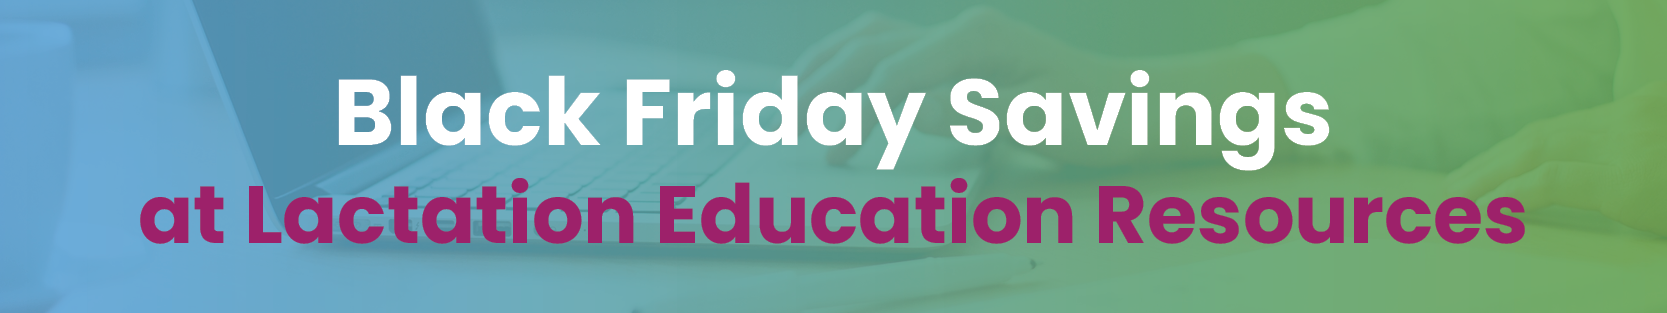 Black Friday Savings at Lactation Education Resources